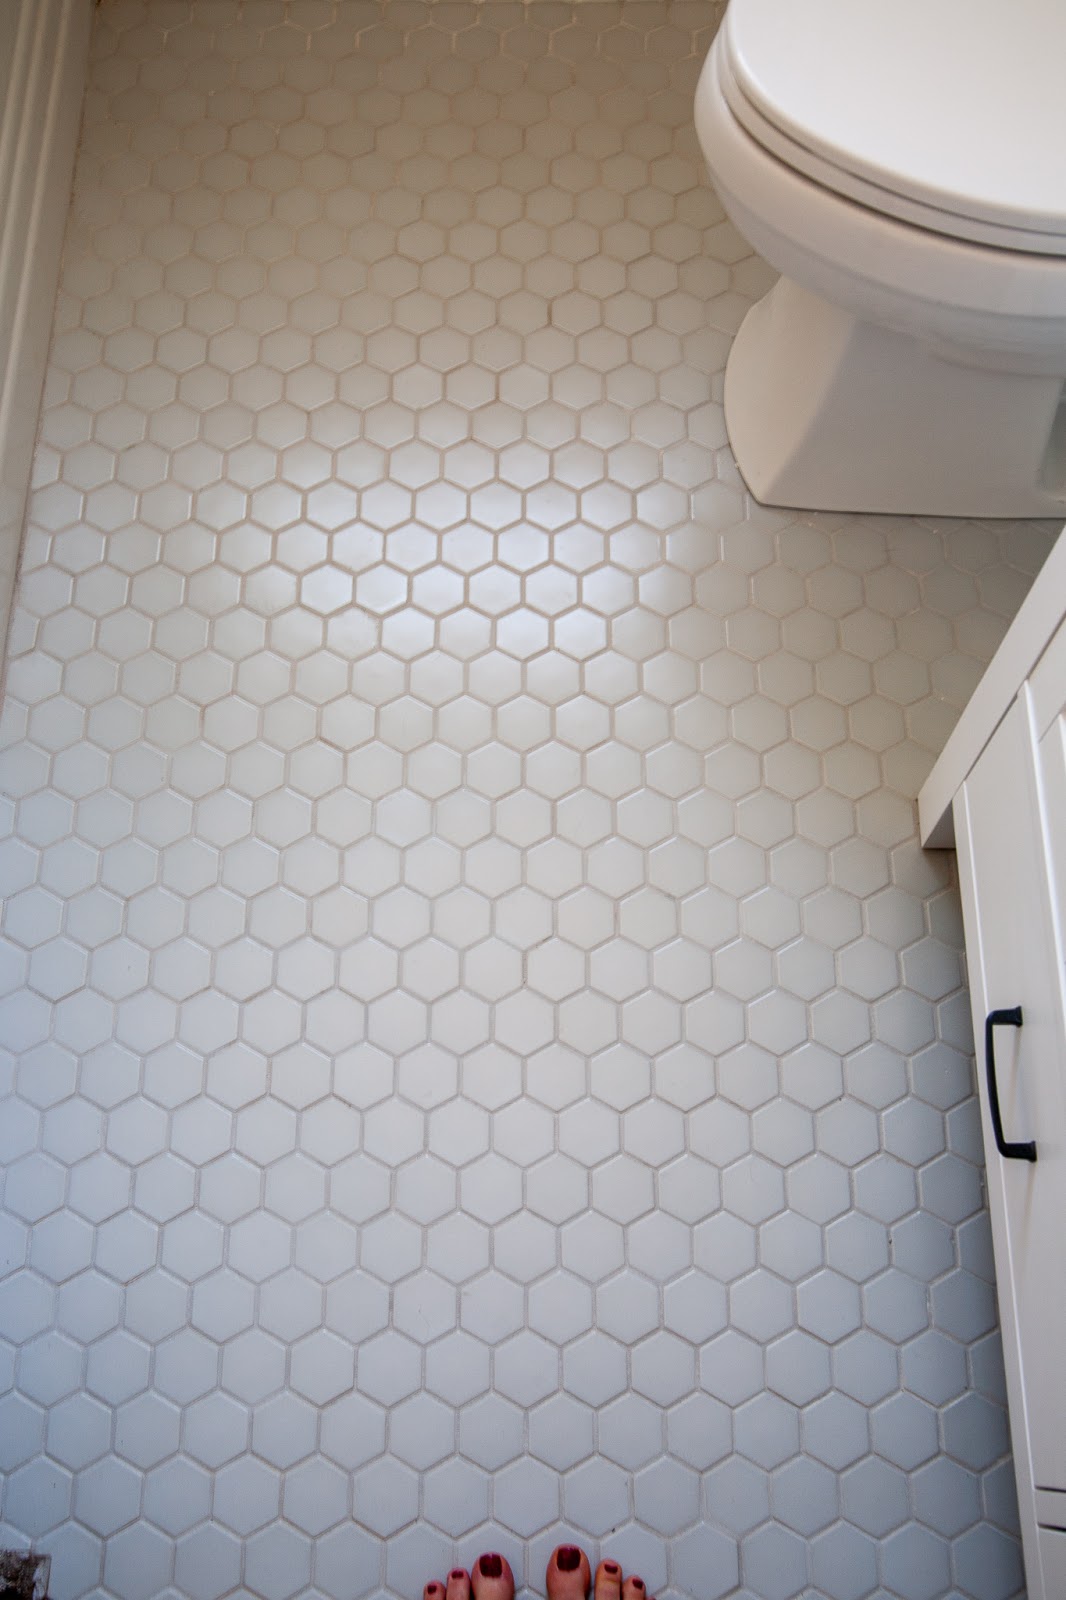 How To Lay Mosaic Tile Flooring Week, Mosaic Tile Bathroom Floor